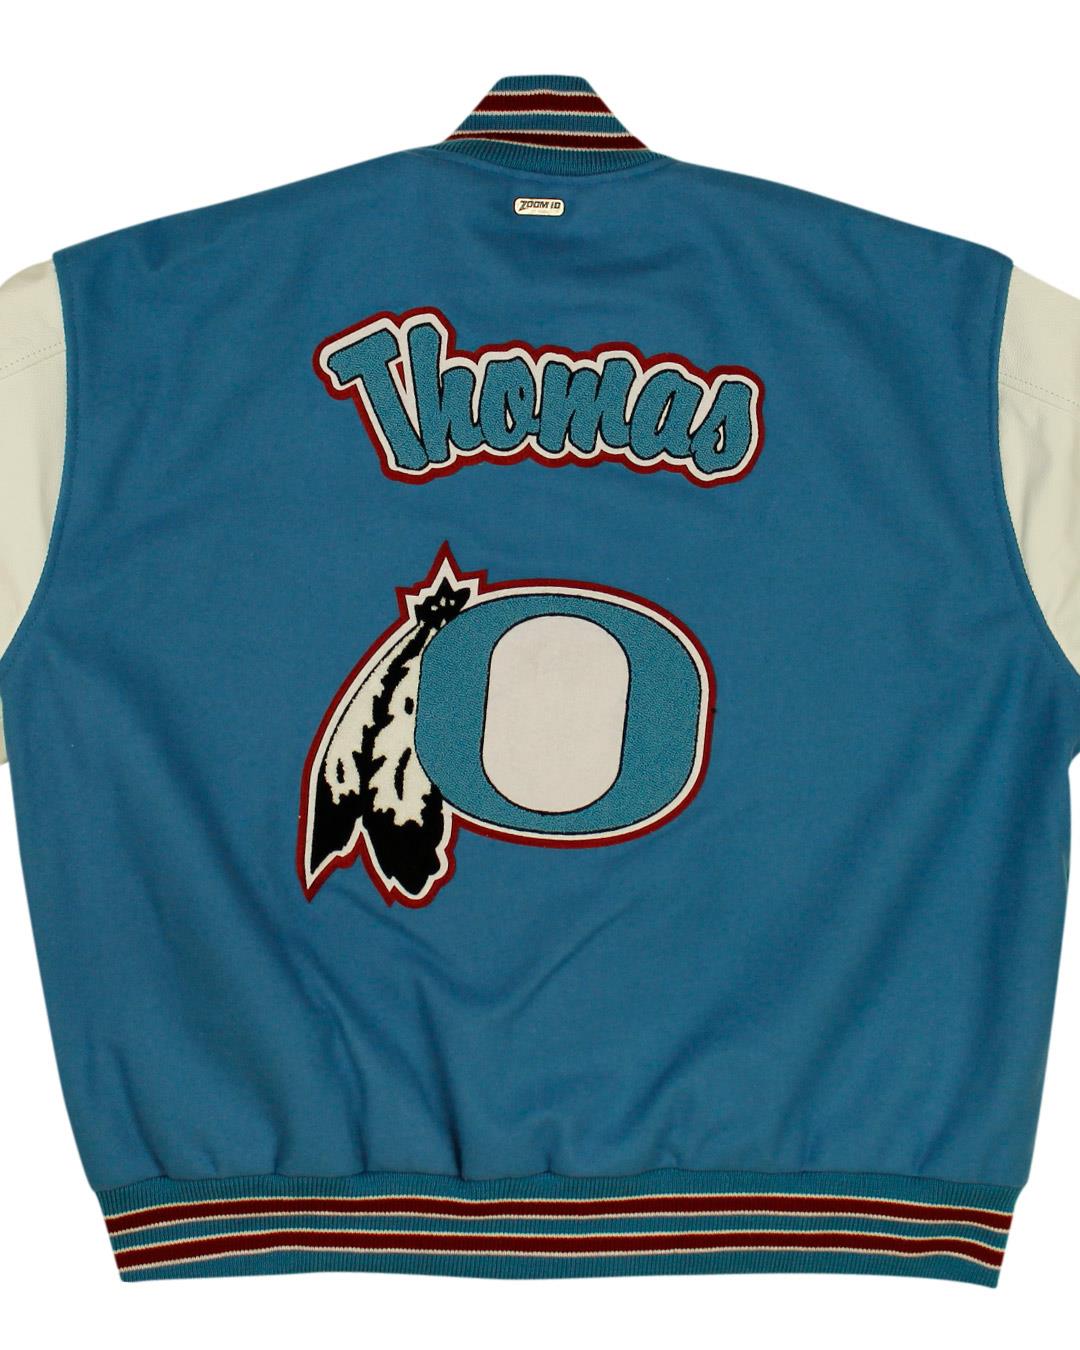 Owyhee High School Letterman Jacket, Owyhee NV - Front